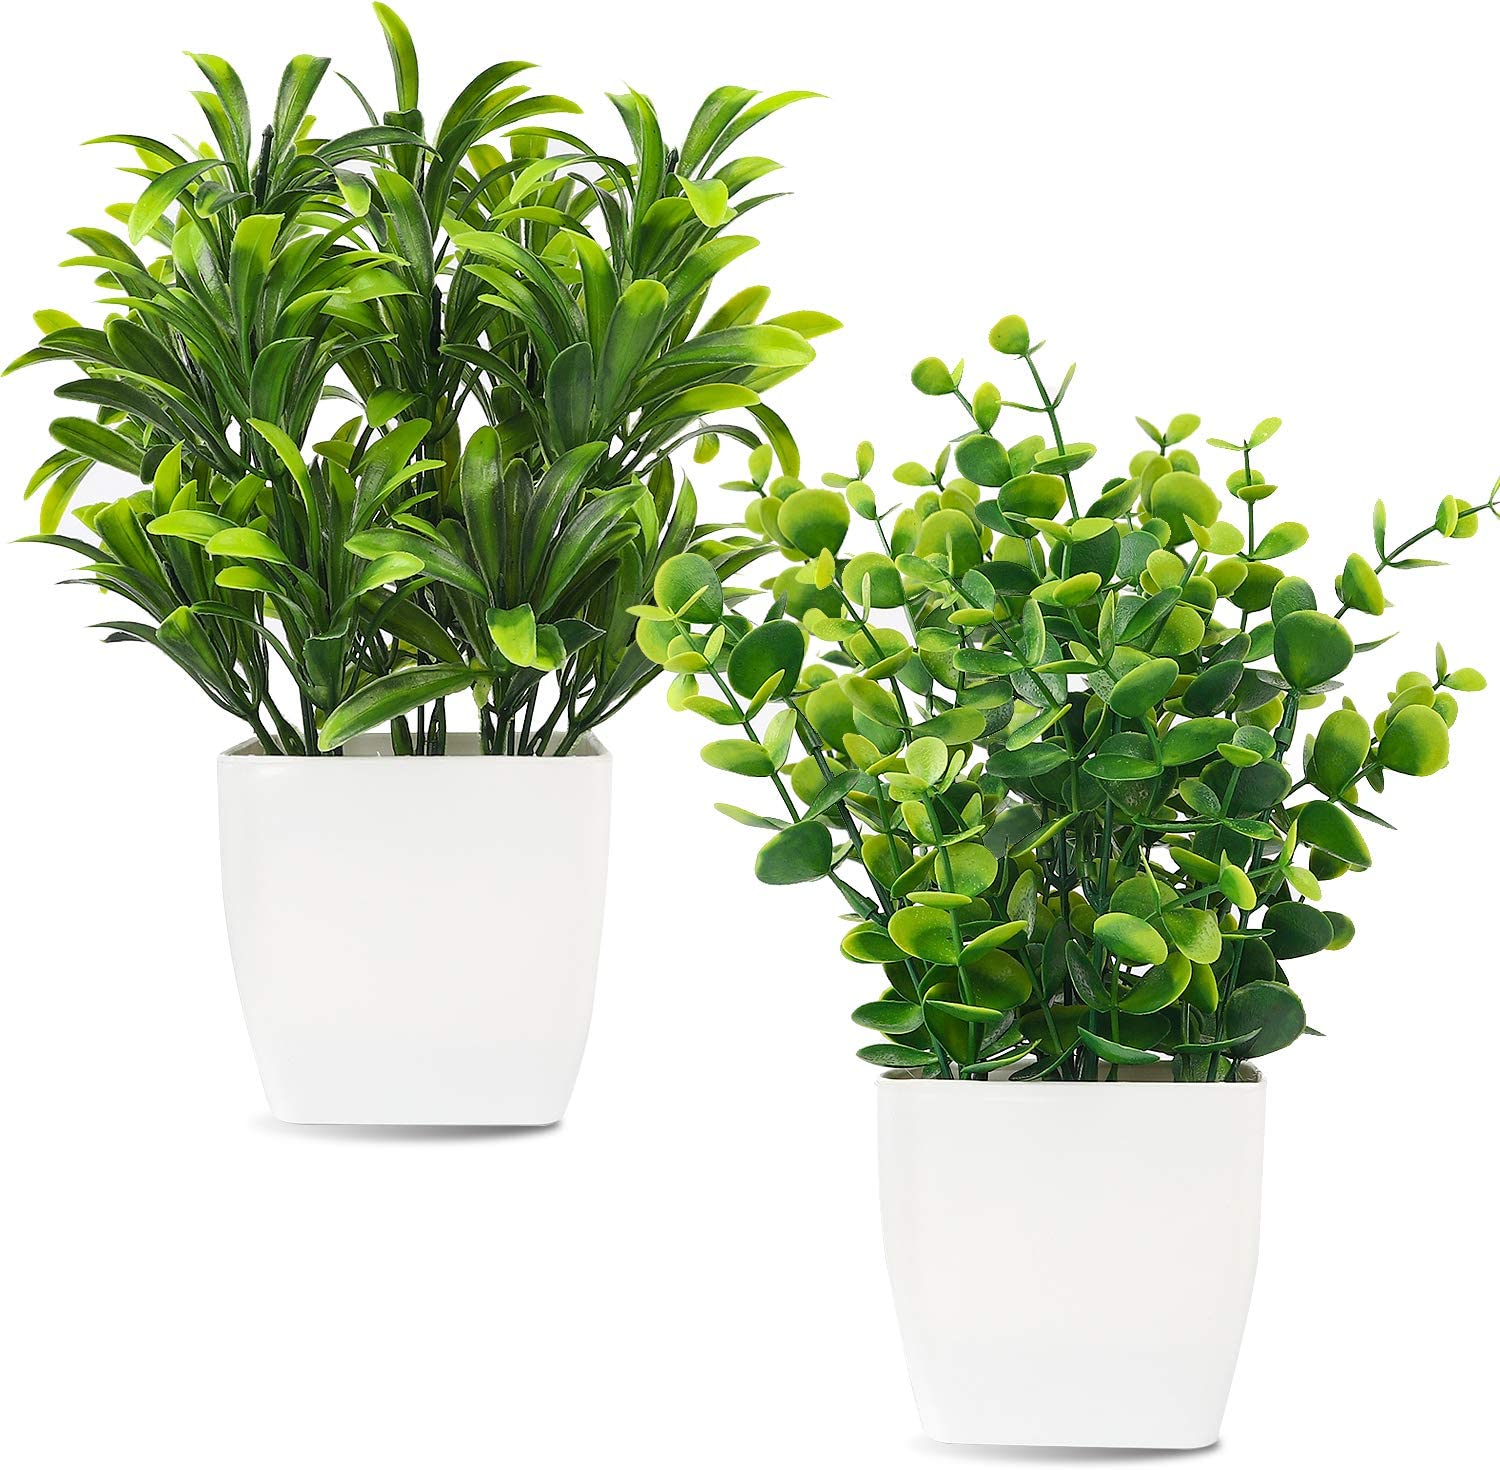 Whonline 2pcs Artificial Mini Potted Plants